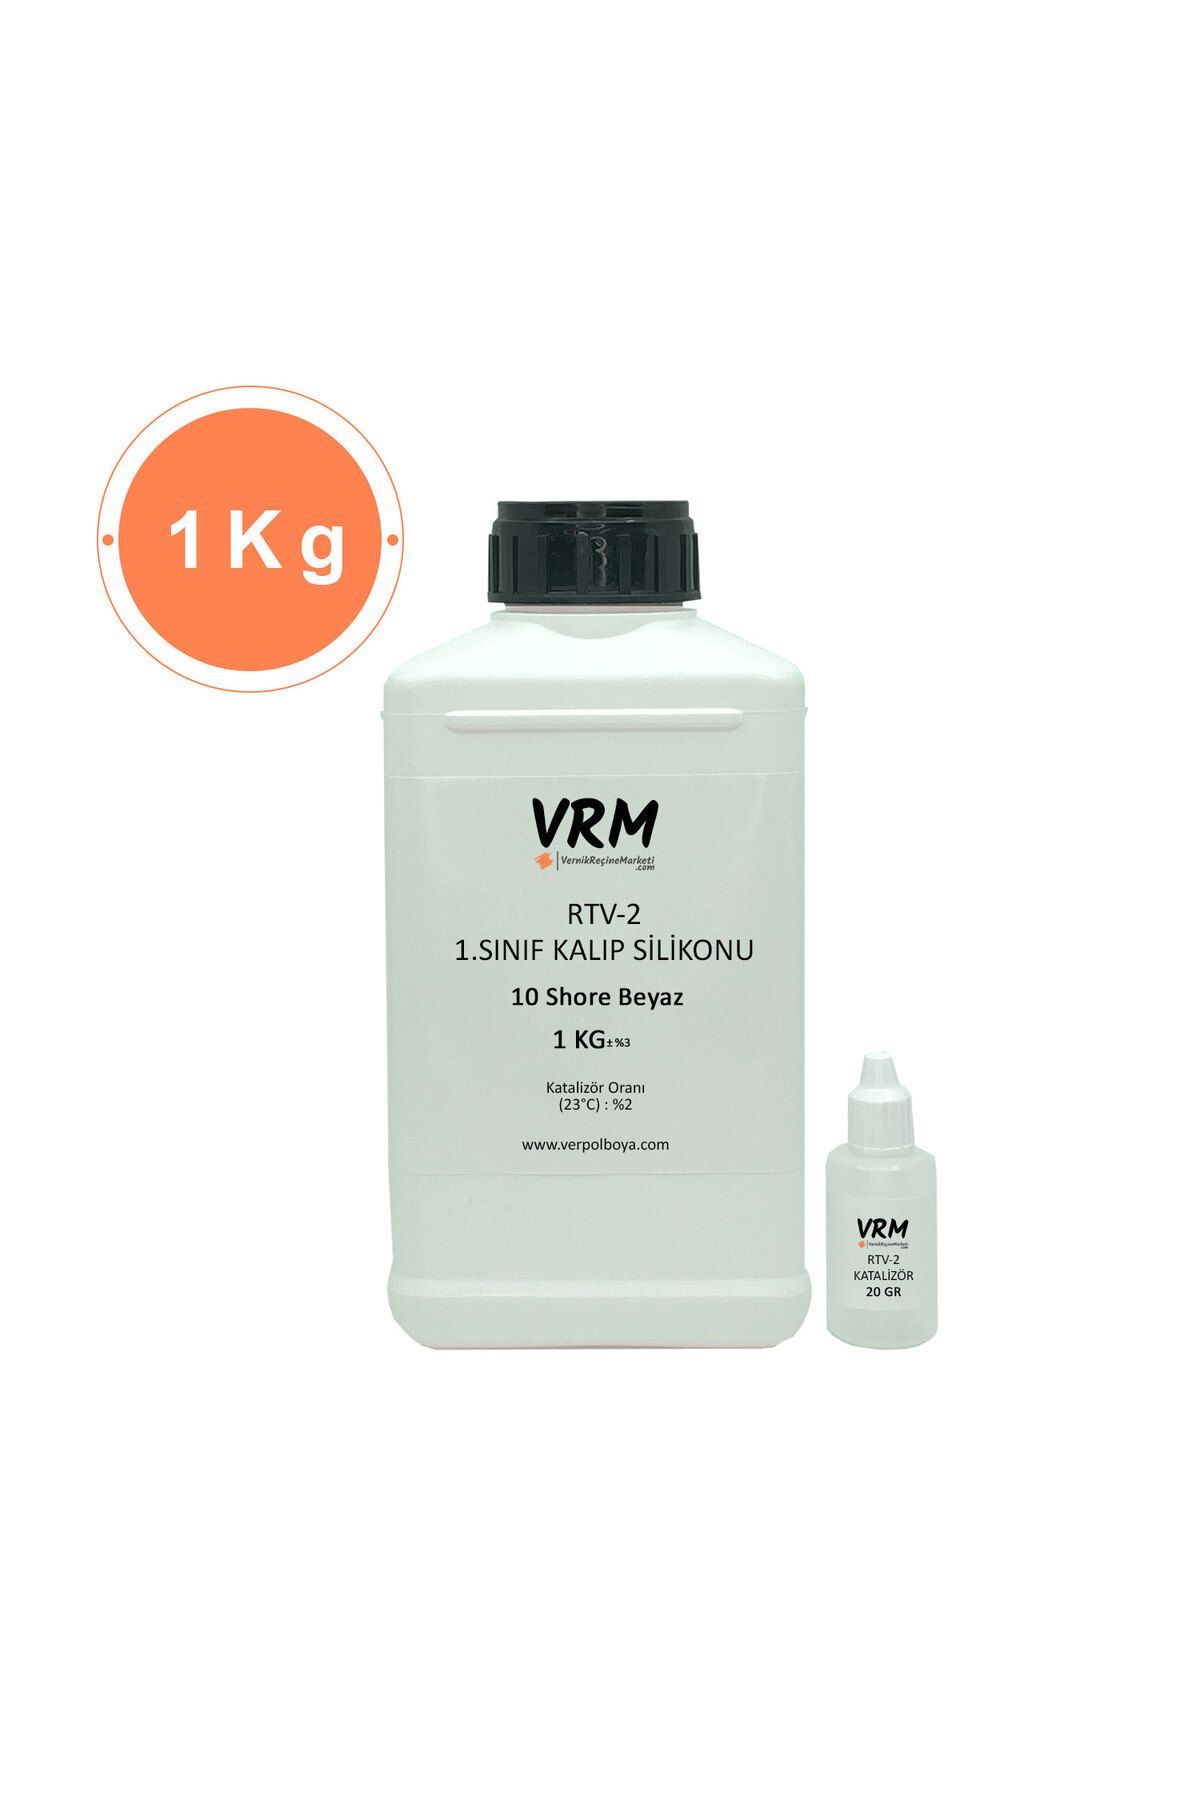 VRM VernikRecineMarketi Rtv-2 Kalıp Silikonu 1. Sınıf Beyaz (10 SHORE) 1 Kg